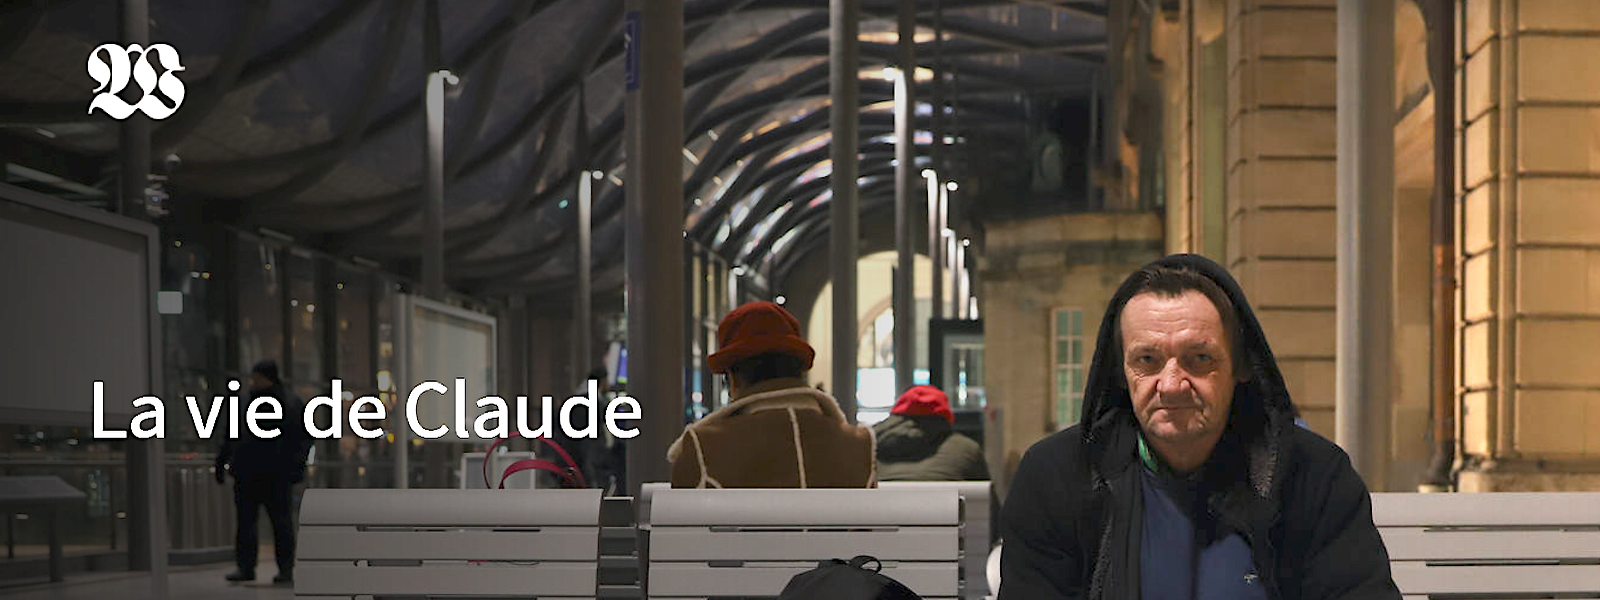 Die Videoreportage "La vie de Claude" ist unter den ausgezeichneten Arbeiten.